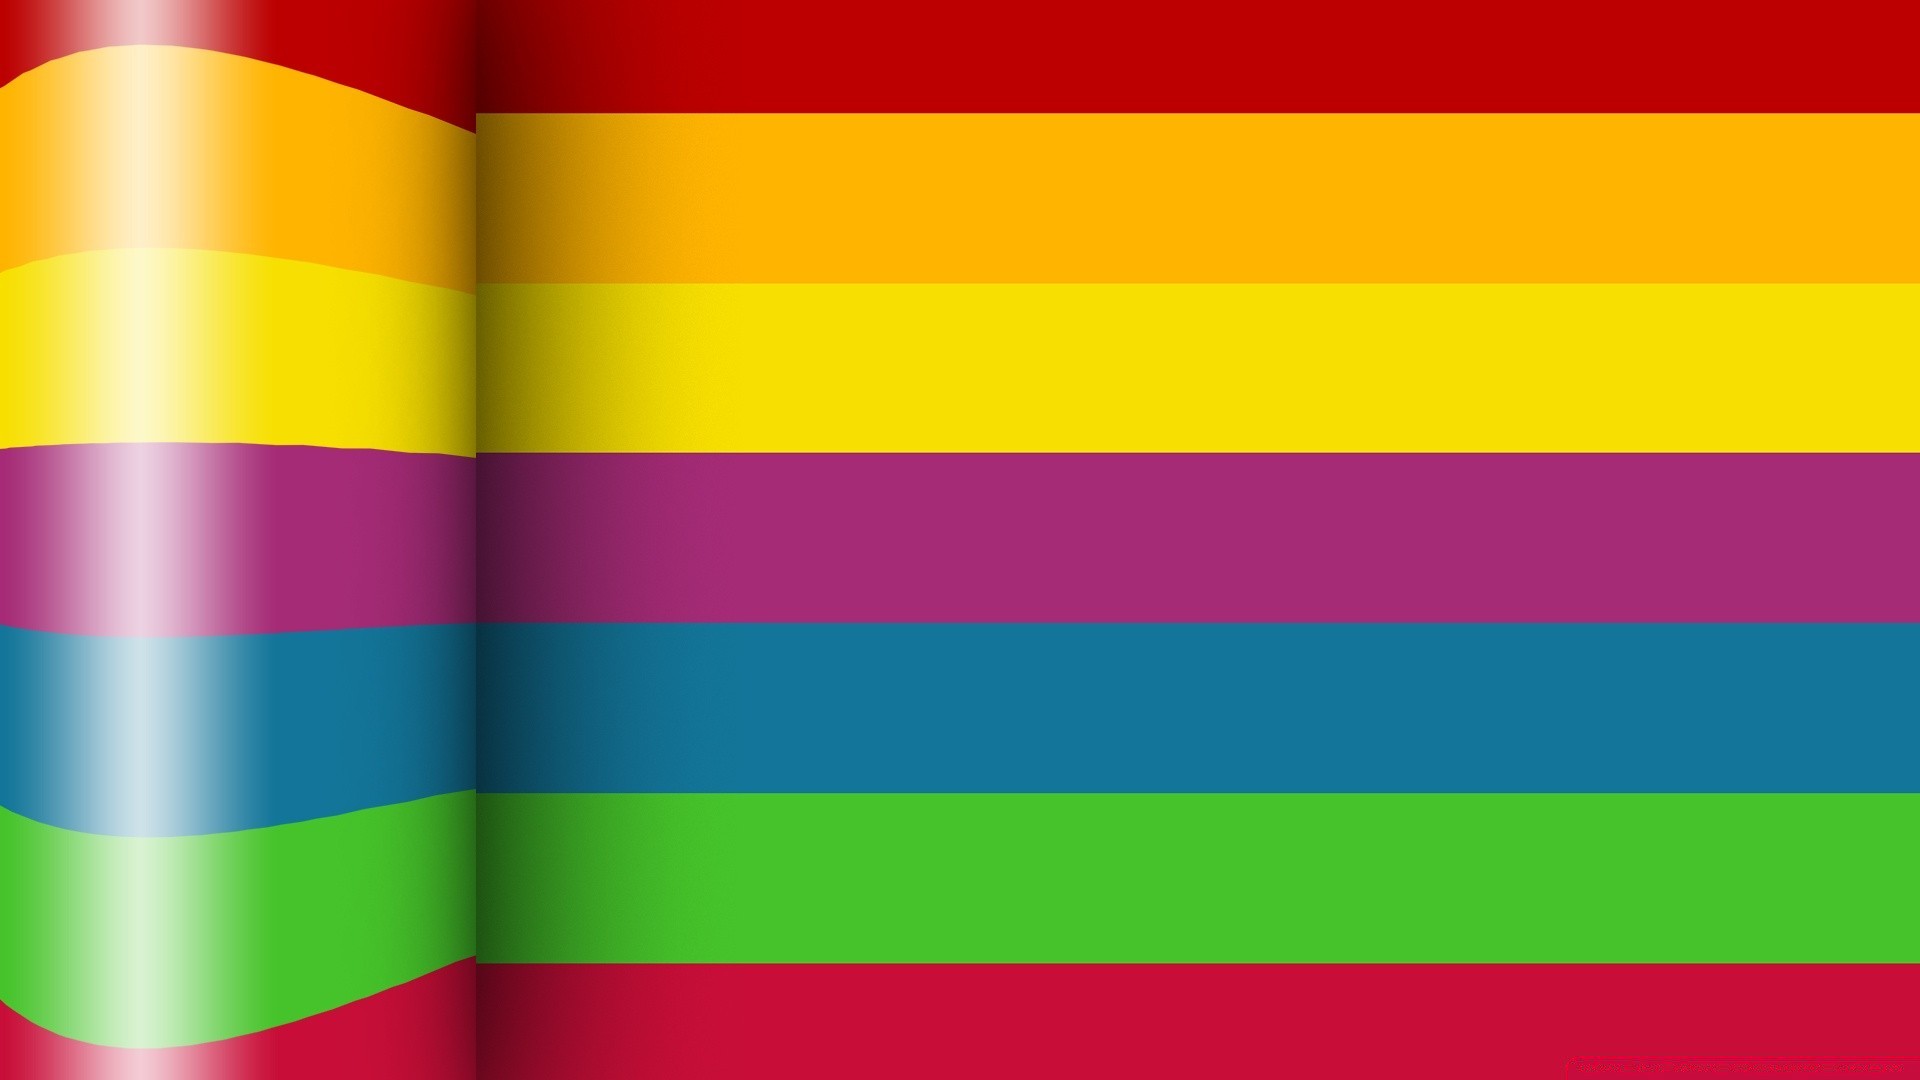 яркие краски флаг патриотизм страна геометрические дизайн обои полоса баннер иллюстрация цвет рабочего стола графический дизайн